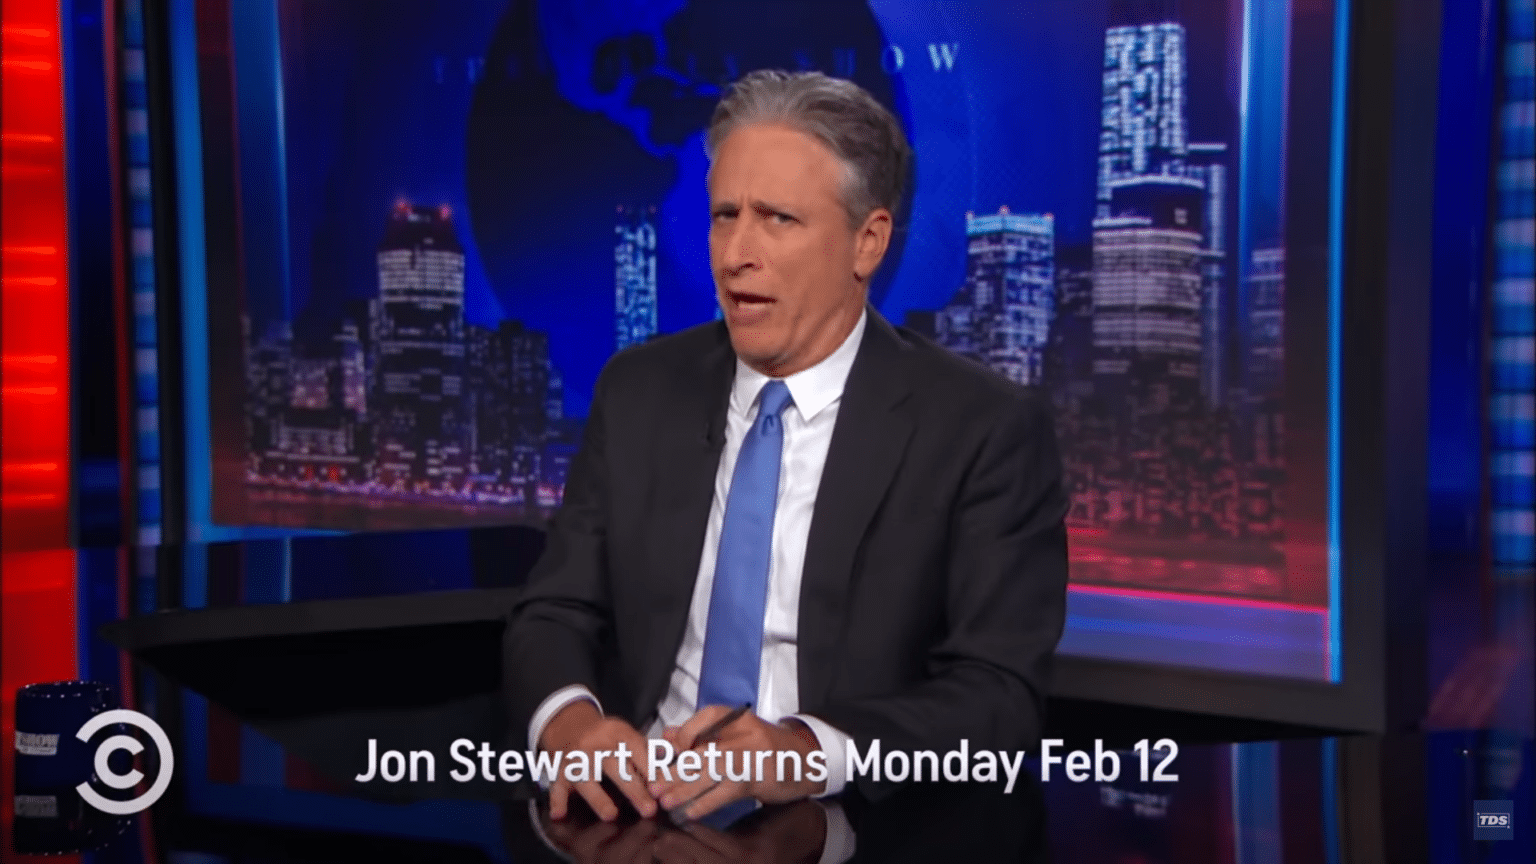 Jon Stewart's Return to Late-Night Show